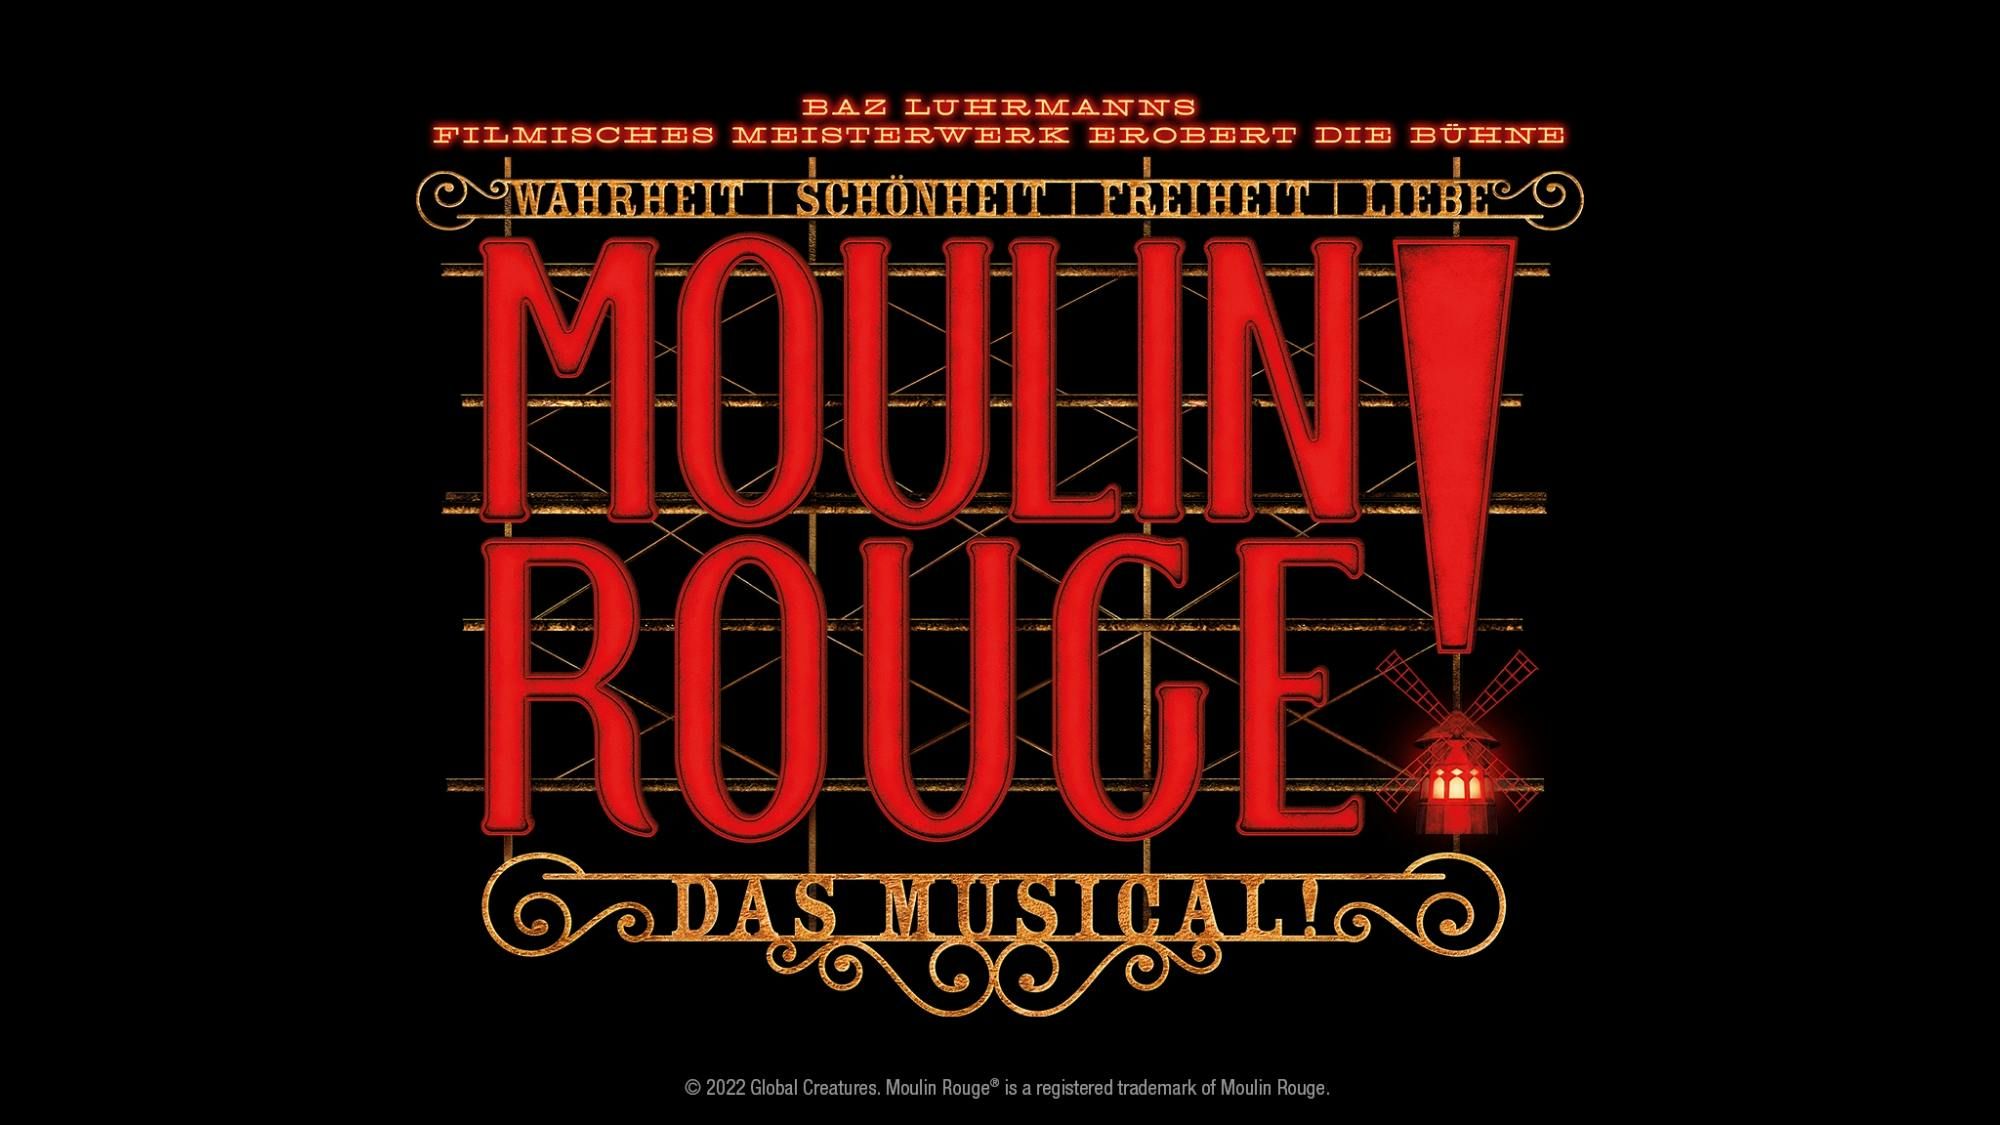 Imagen del tour: Moulin Rouge! La experiencia del teatro musical en Colonia